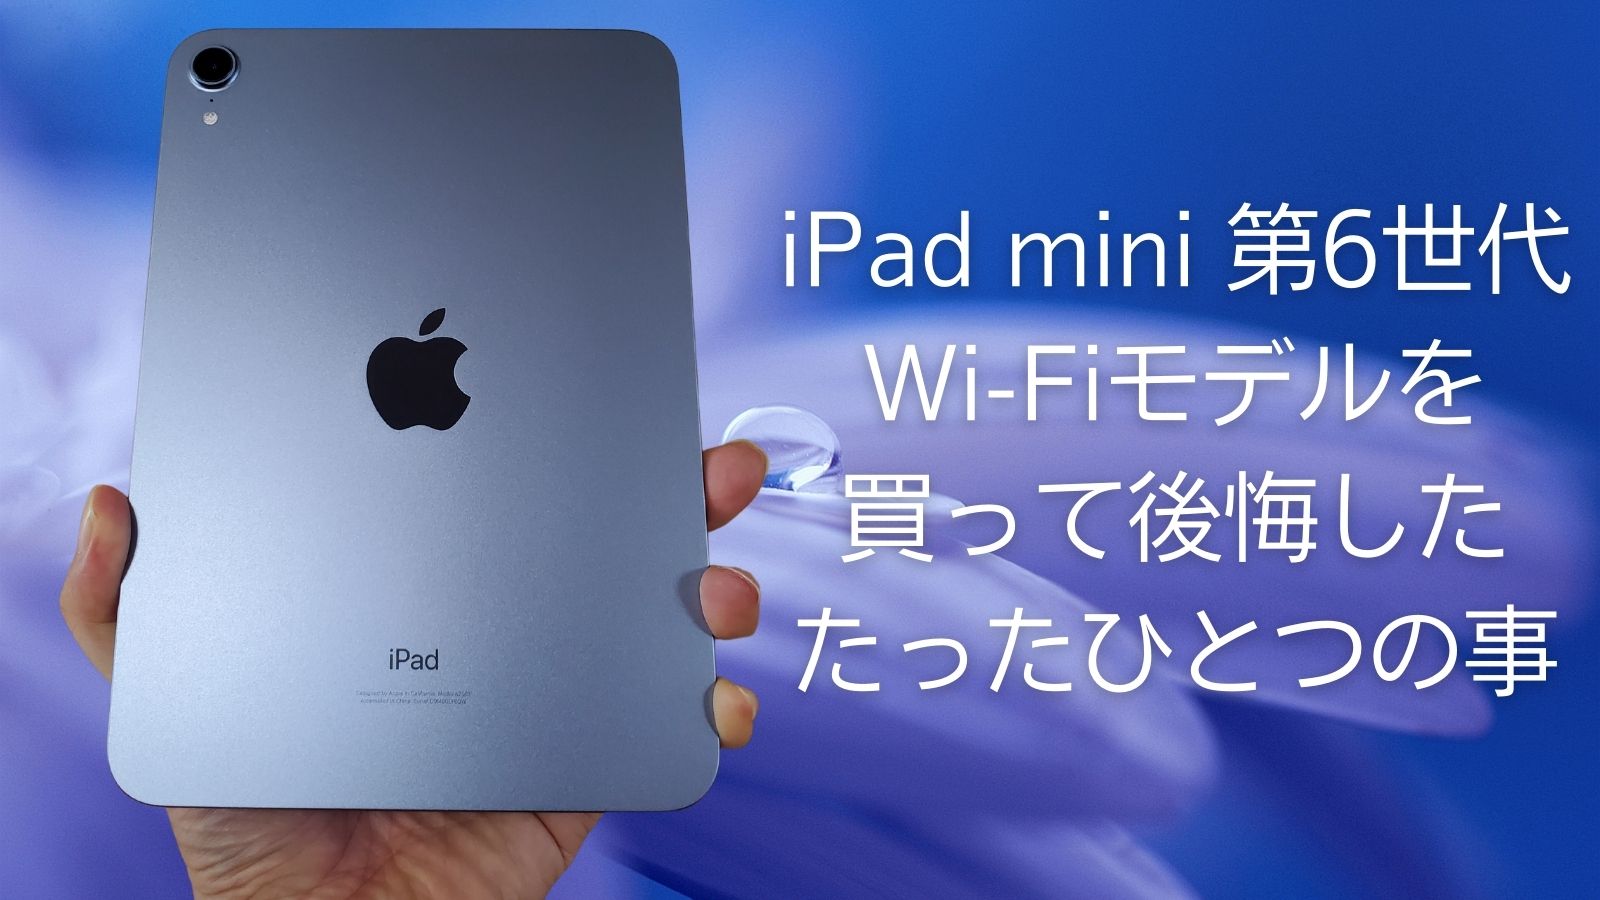 保証書付 mini iPad 6 パープル 64GB Wi-Fi+Cellular タブレット